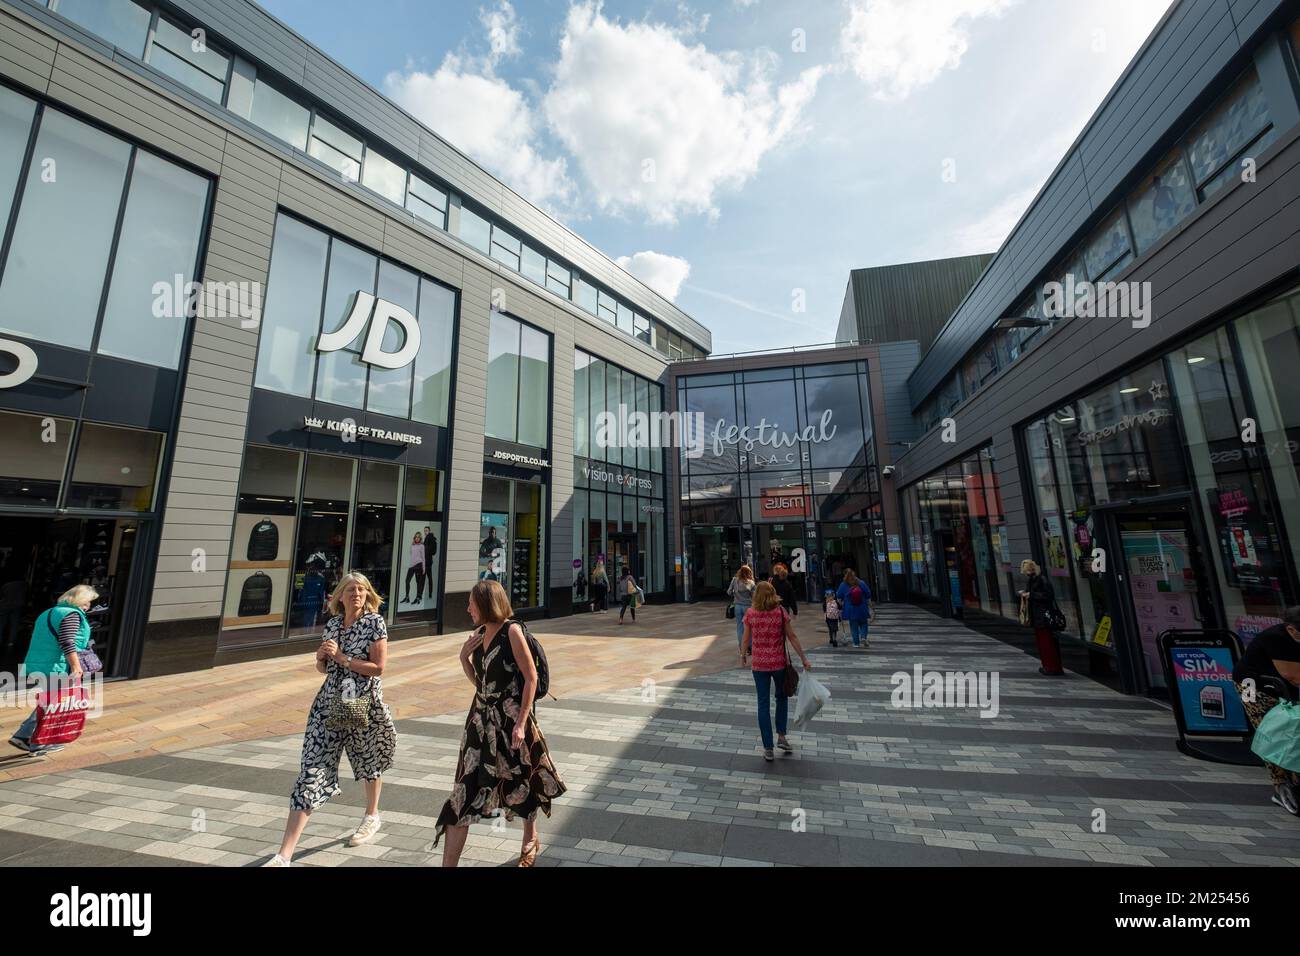 Basingstoke, Regno Unito - Settembre 2022: Il centro commerciale Malls Festival Place, una grande destinazione di vendita al dettaglio a uso misto. Foto Stock